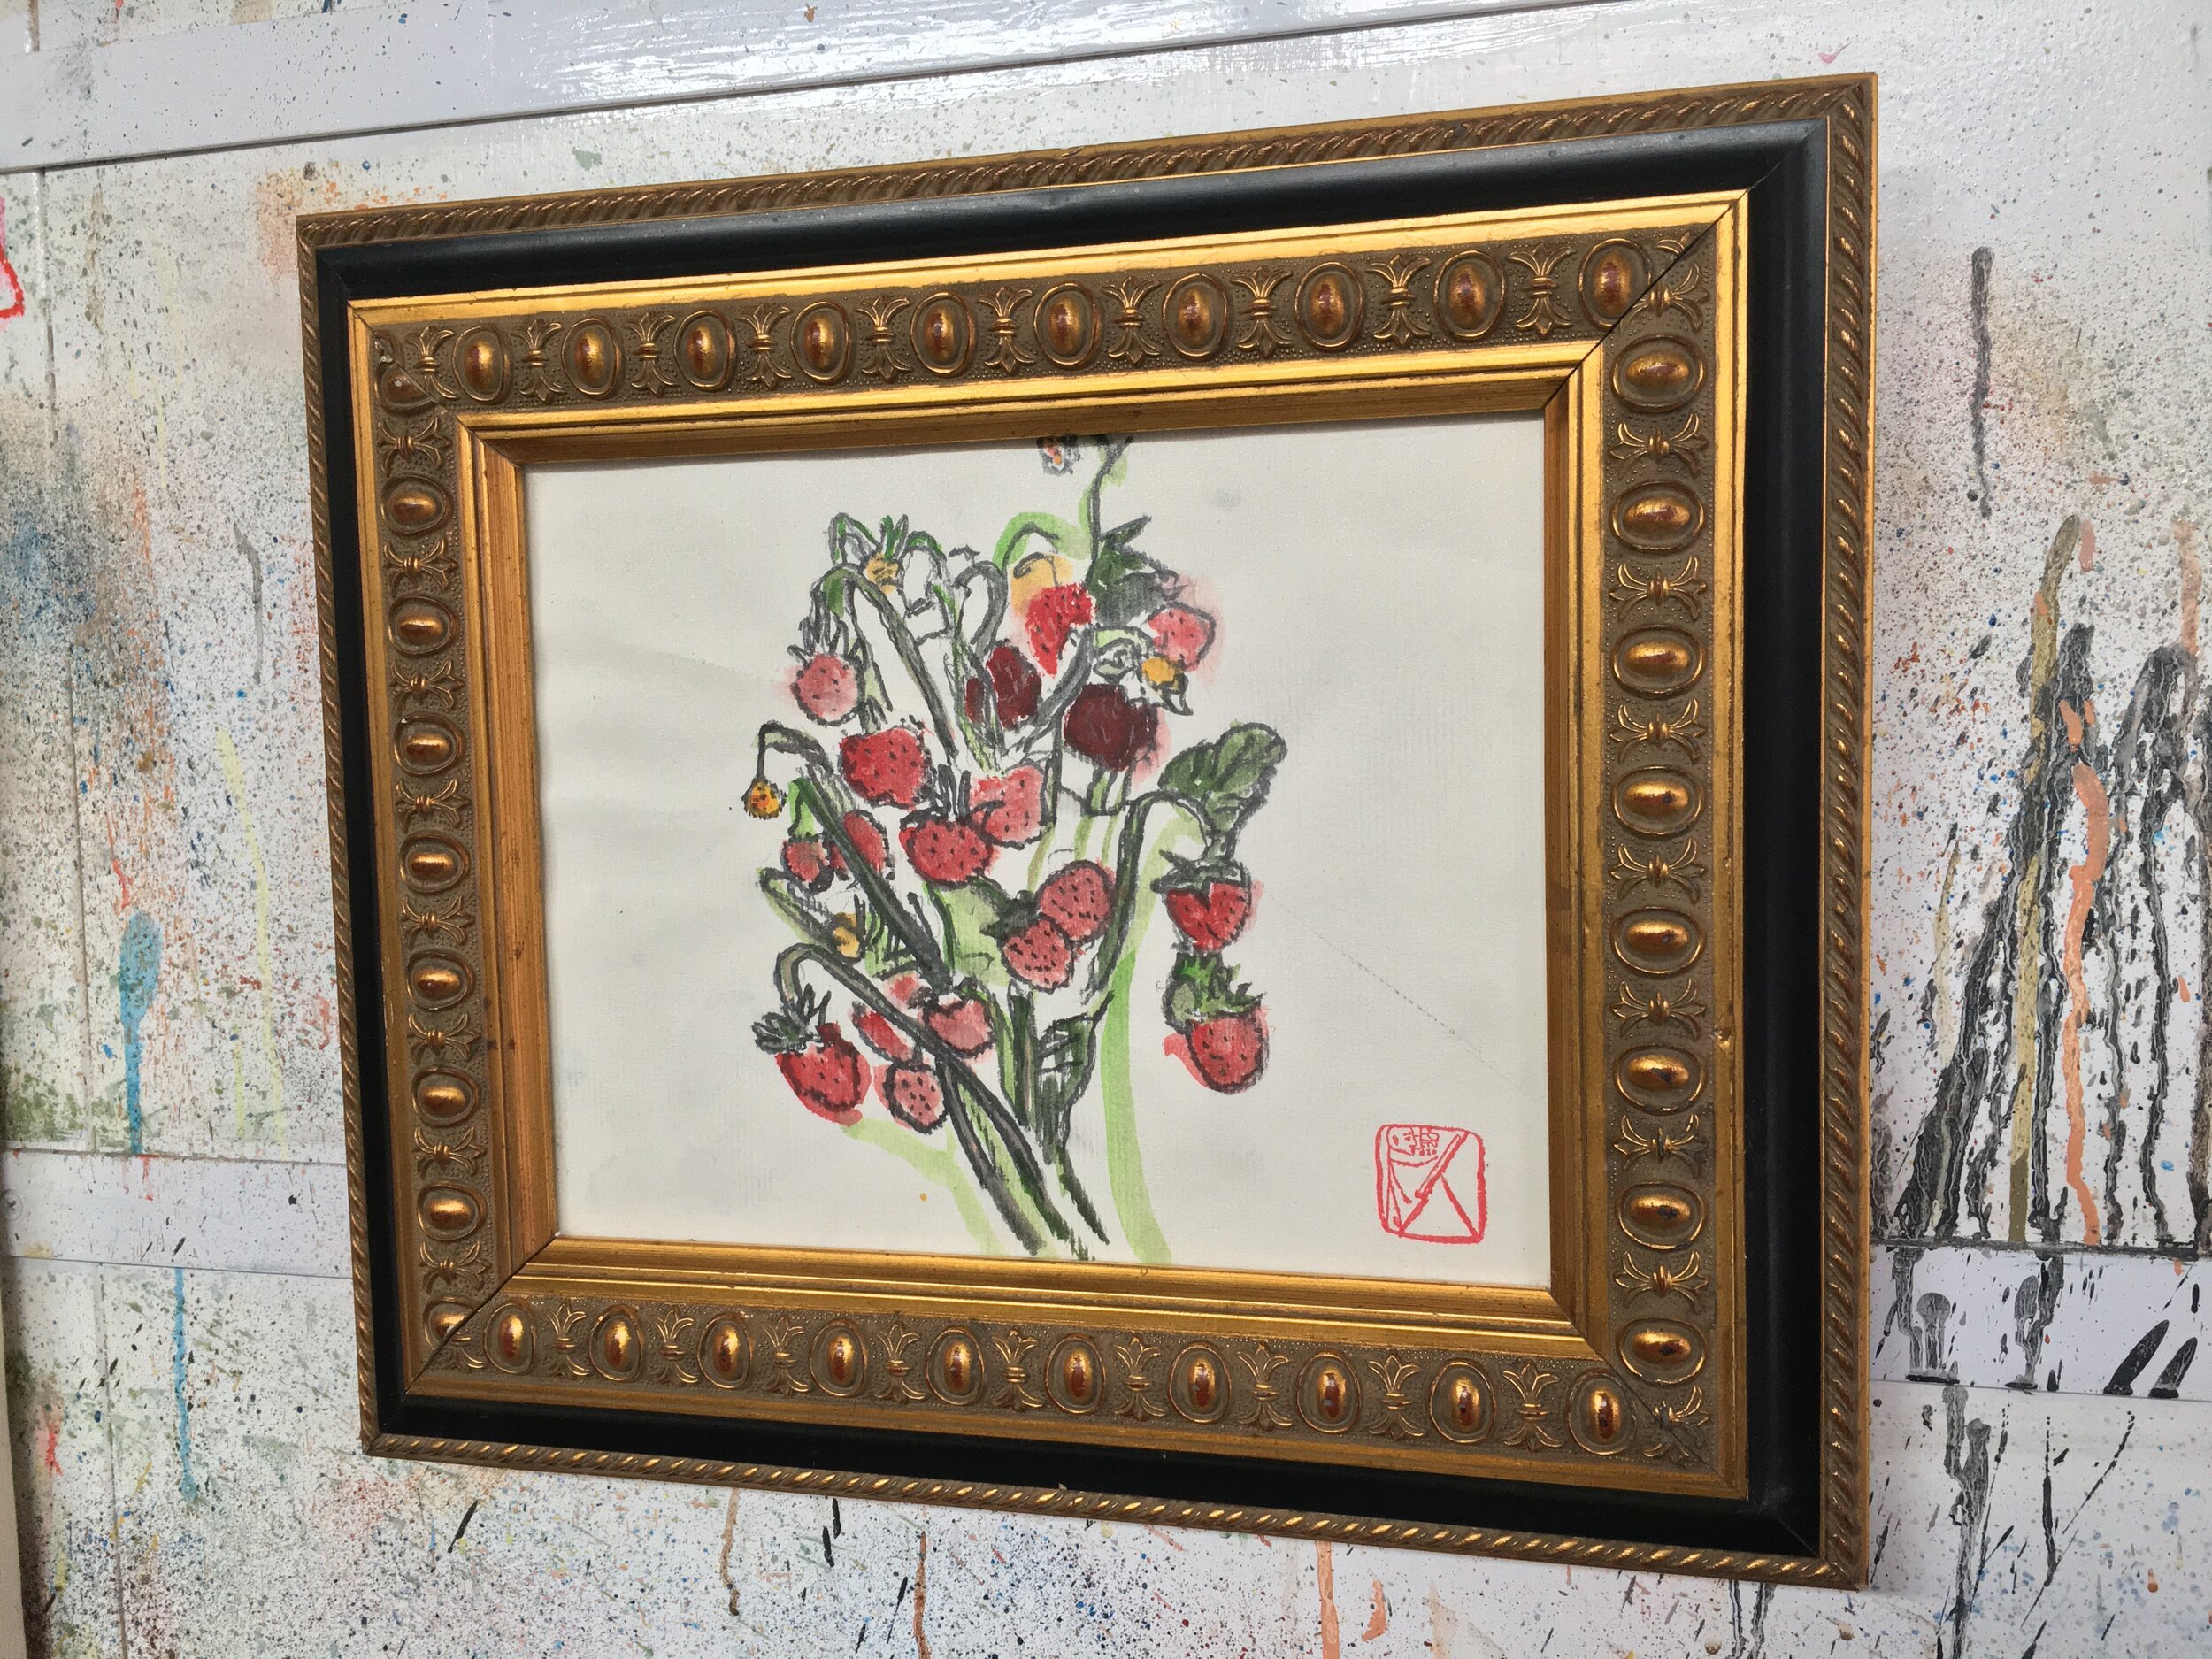 Strawberries+12.5x14.5+watercolor+ink+framed.jpg